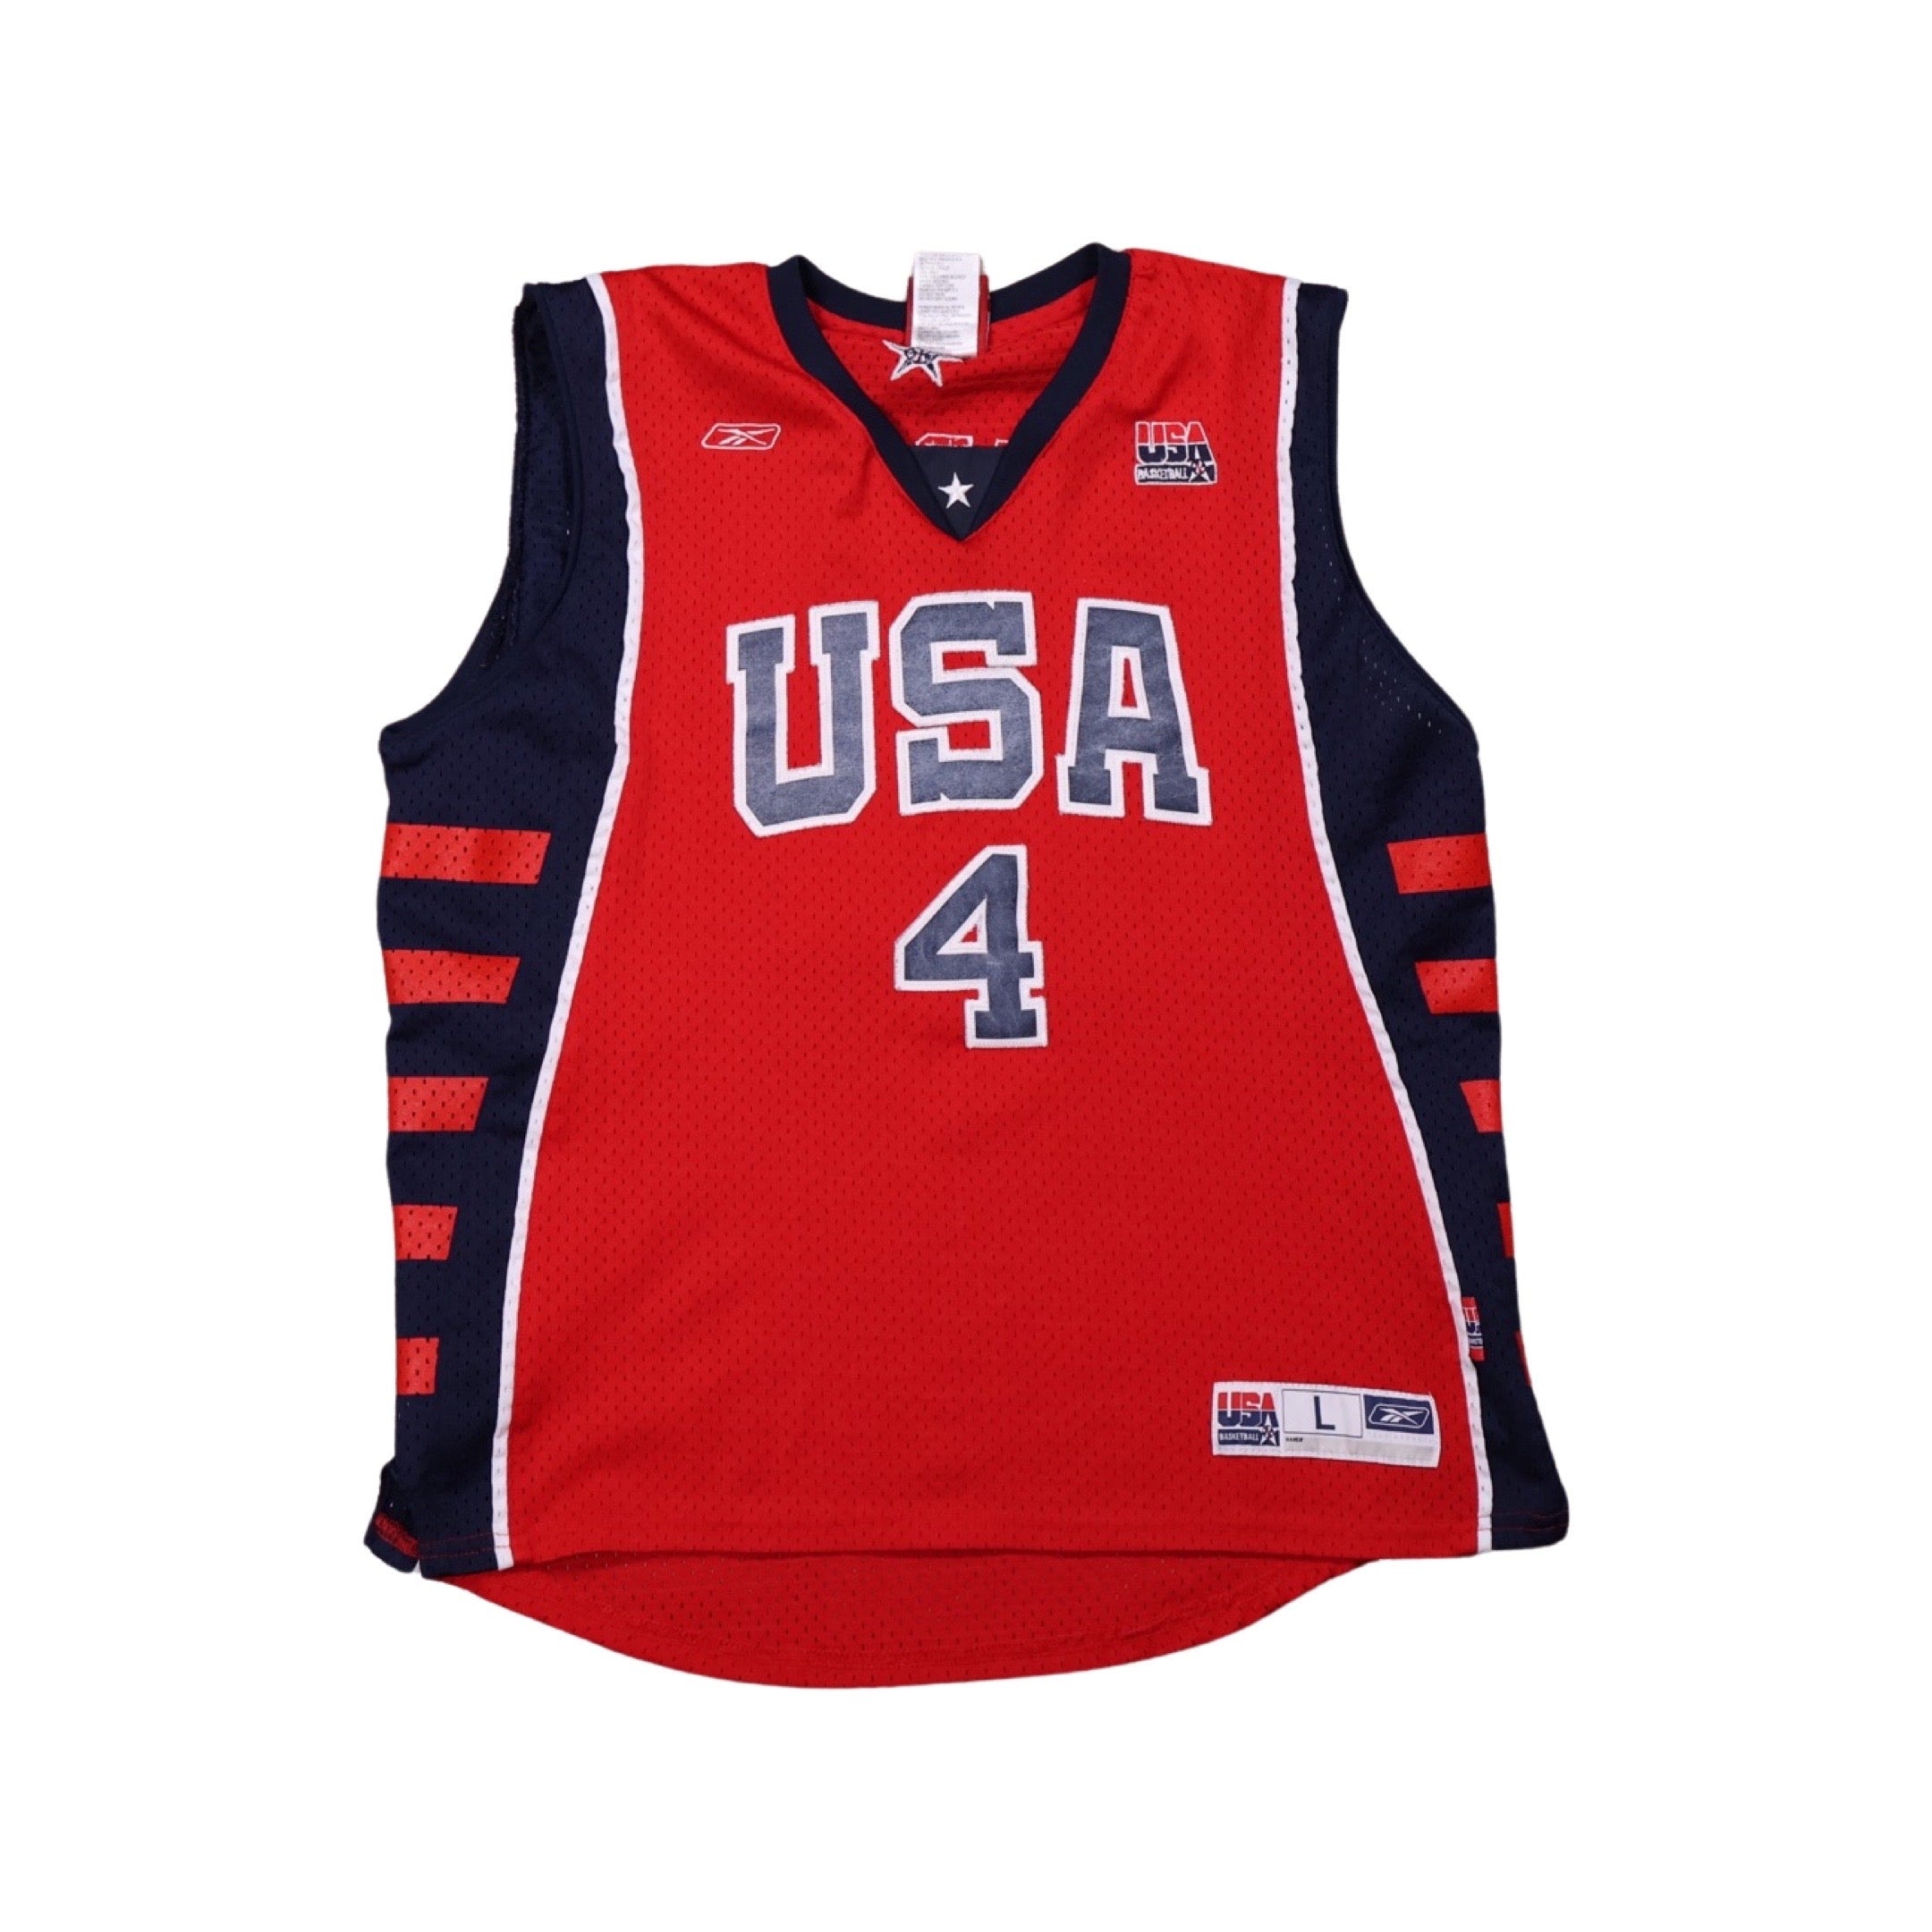 Allen Iverson Team USA Basketball Jersey (Medium)